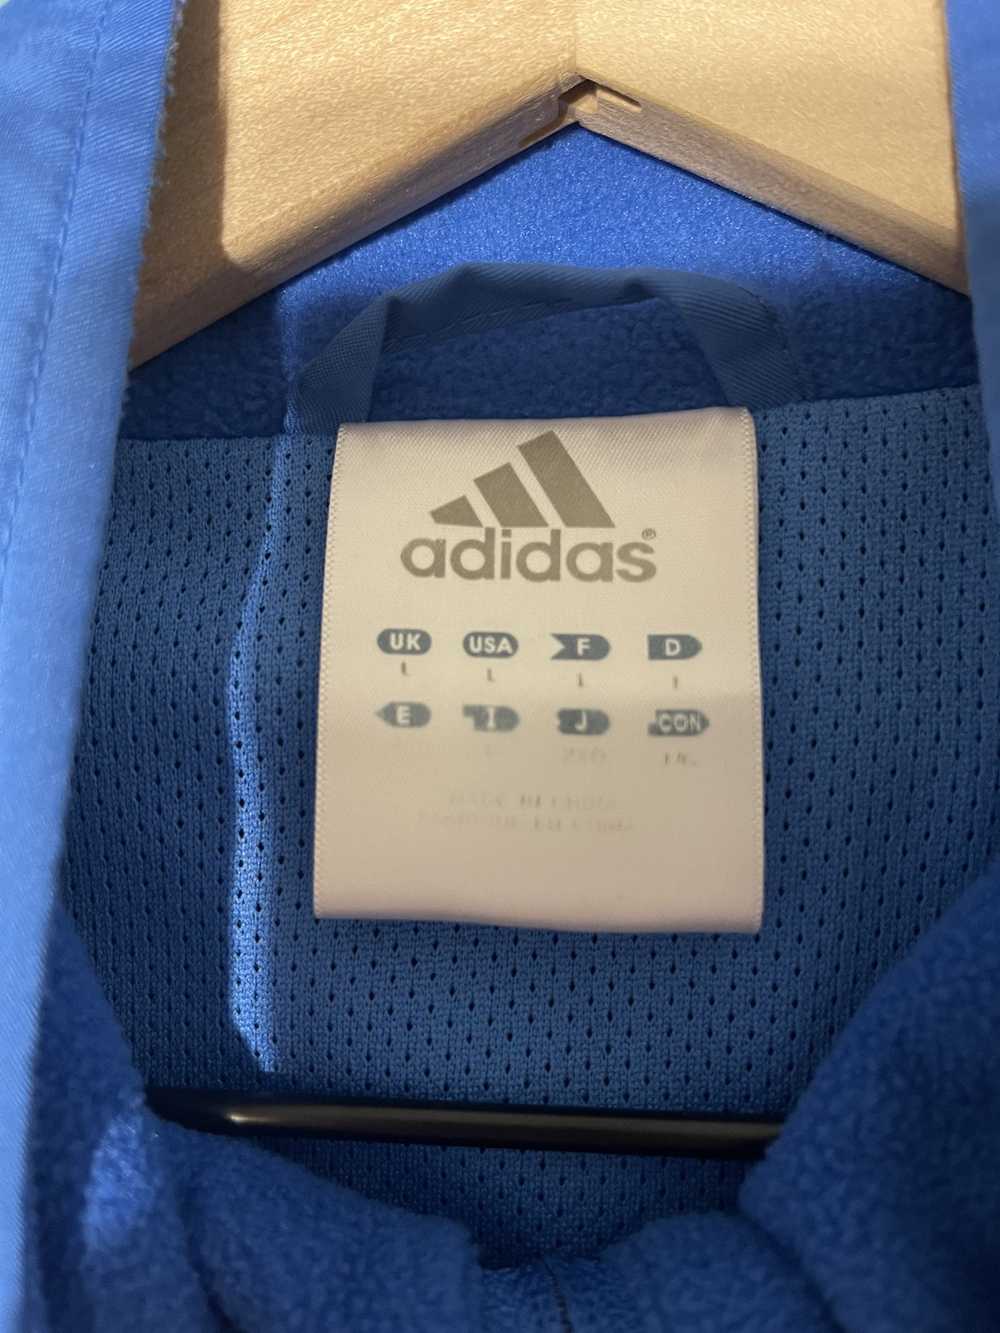 Adidas Adidas UCLA Jacket - image 3